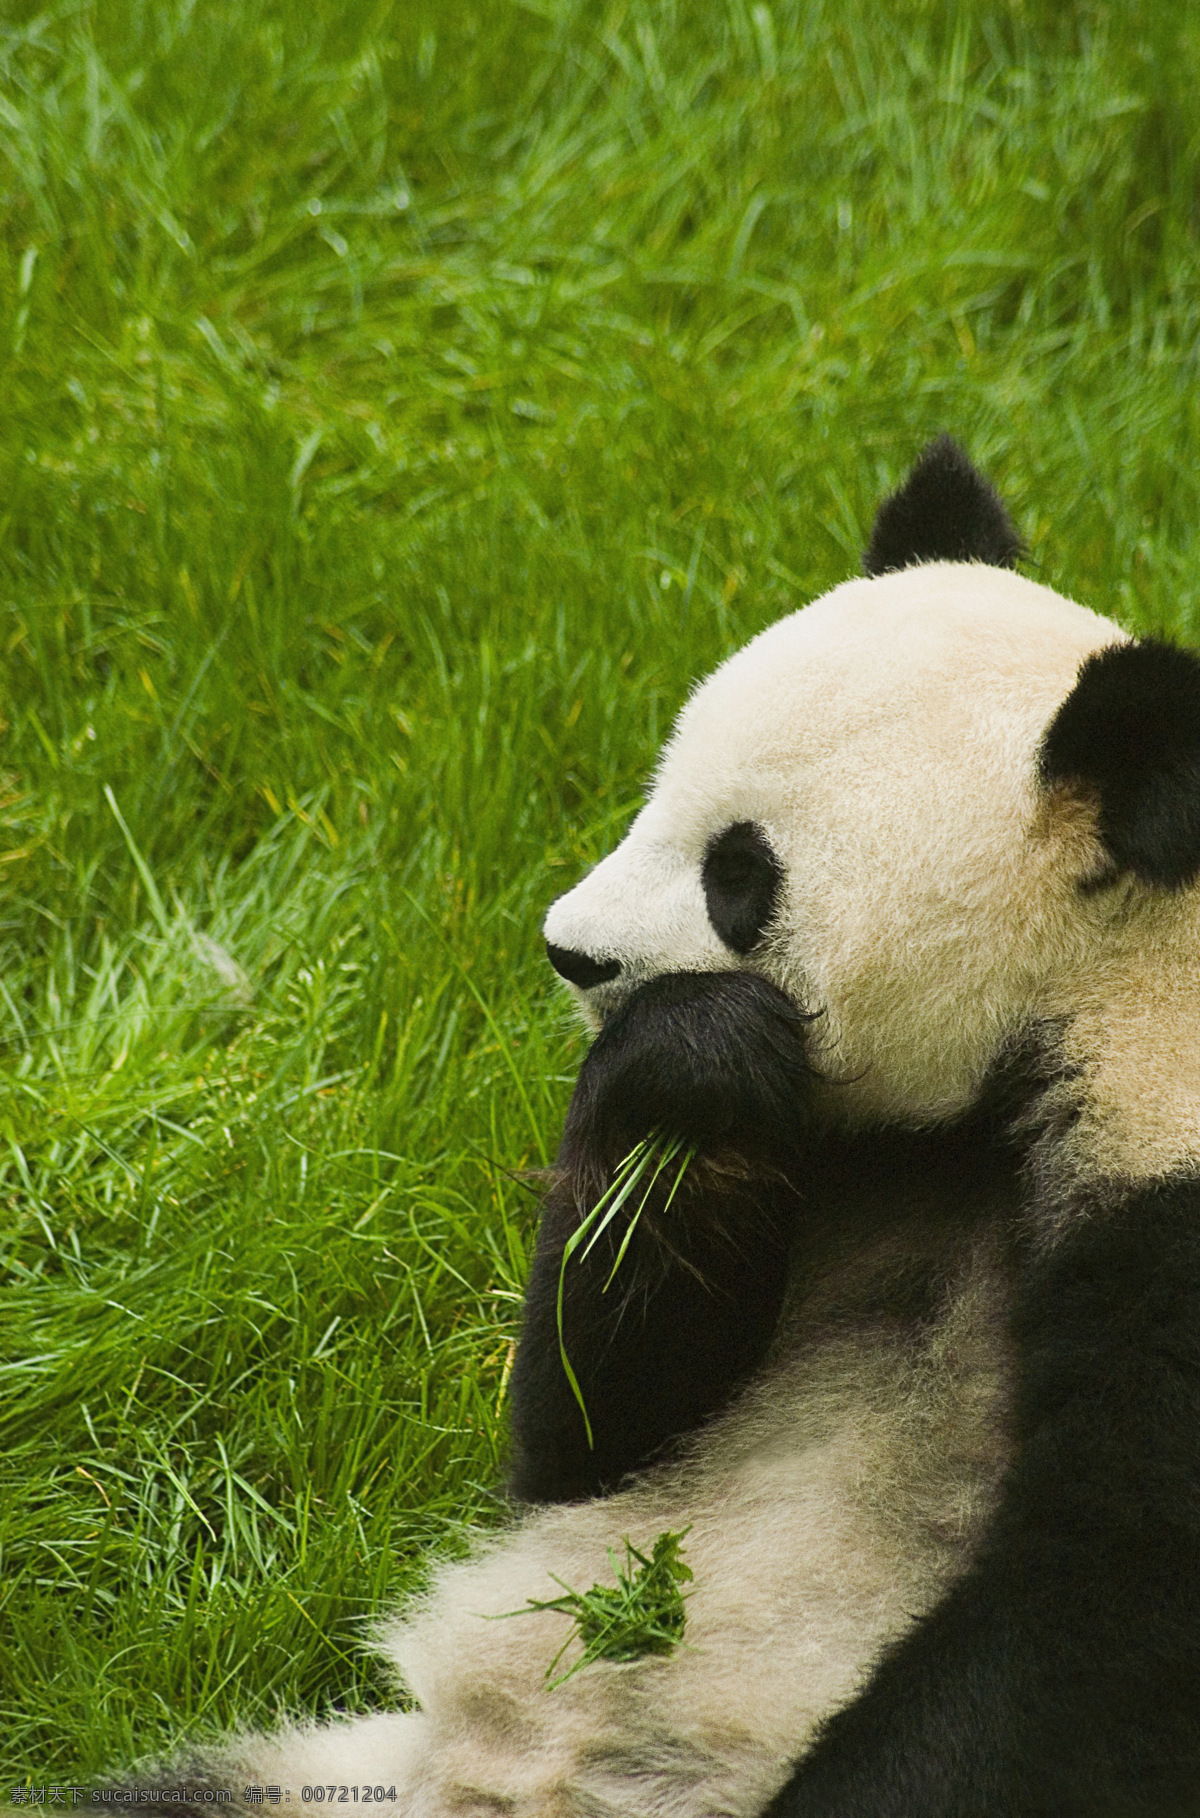 摘 草 吃 国宝 熊猫 高清图片 jpg图库 摄影图片 脯乳动物 保护动物 野生动物 生物世界 草地 吃草的熊猫 猫咪图片